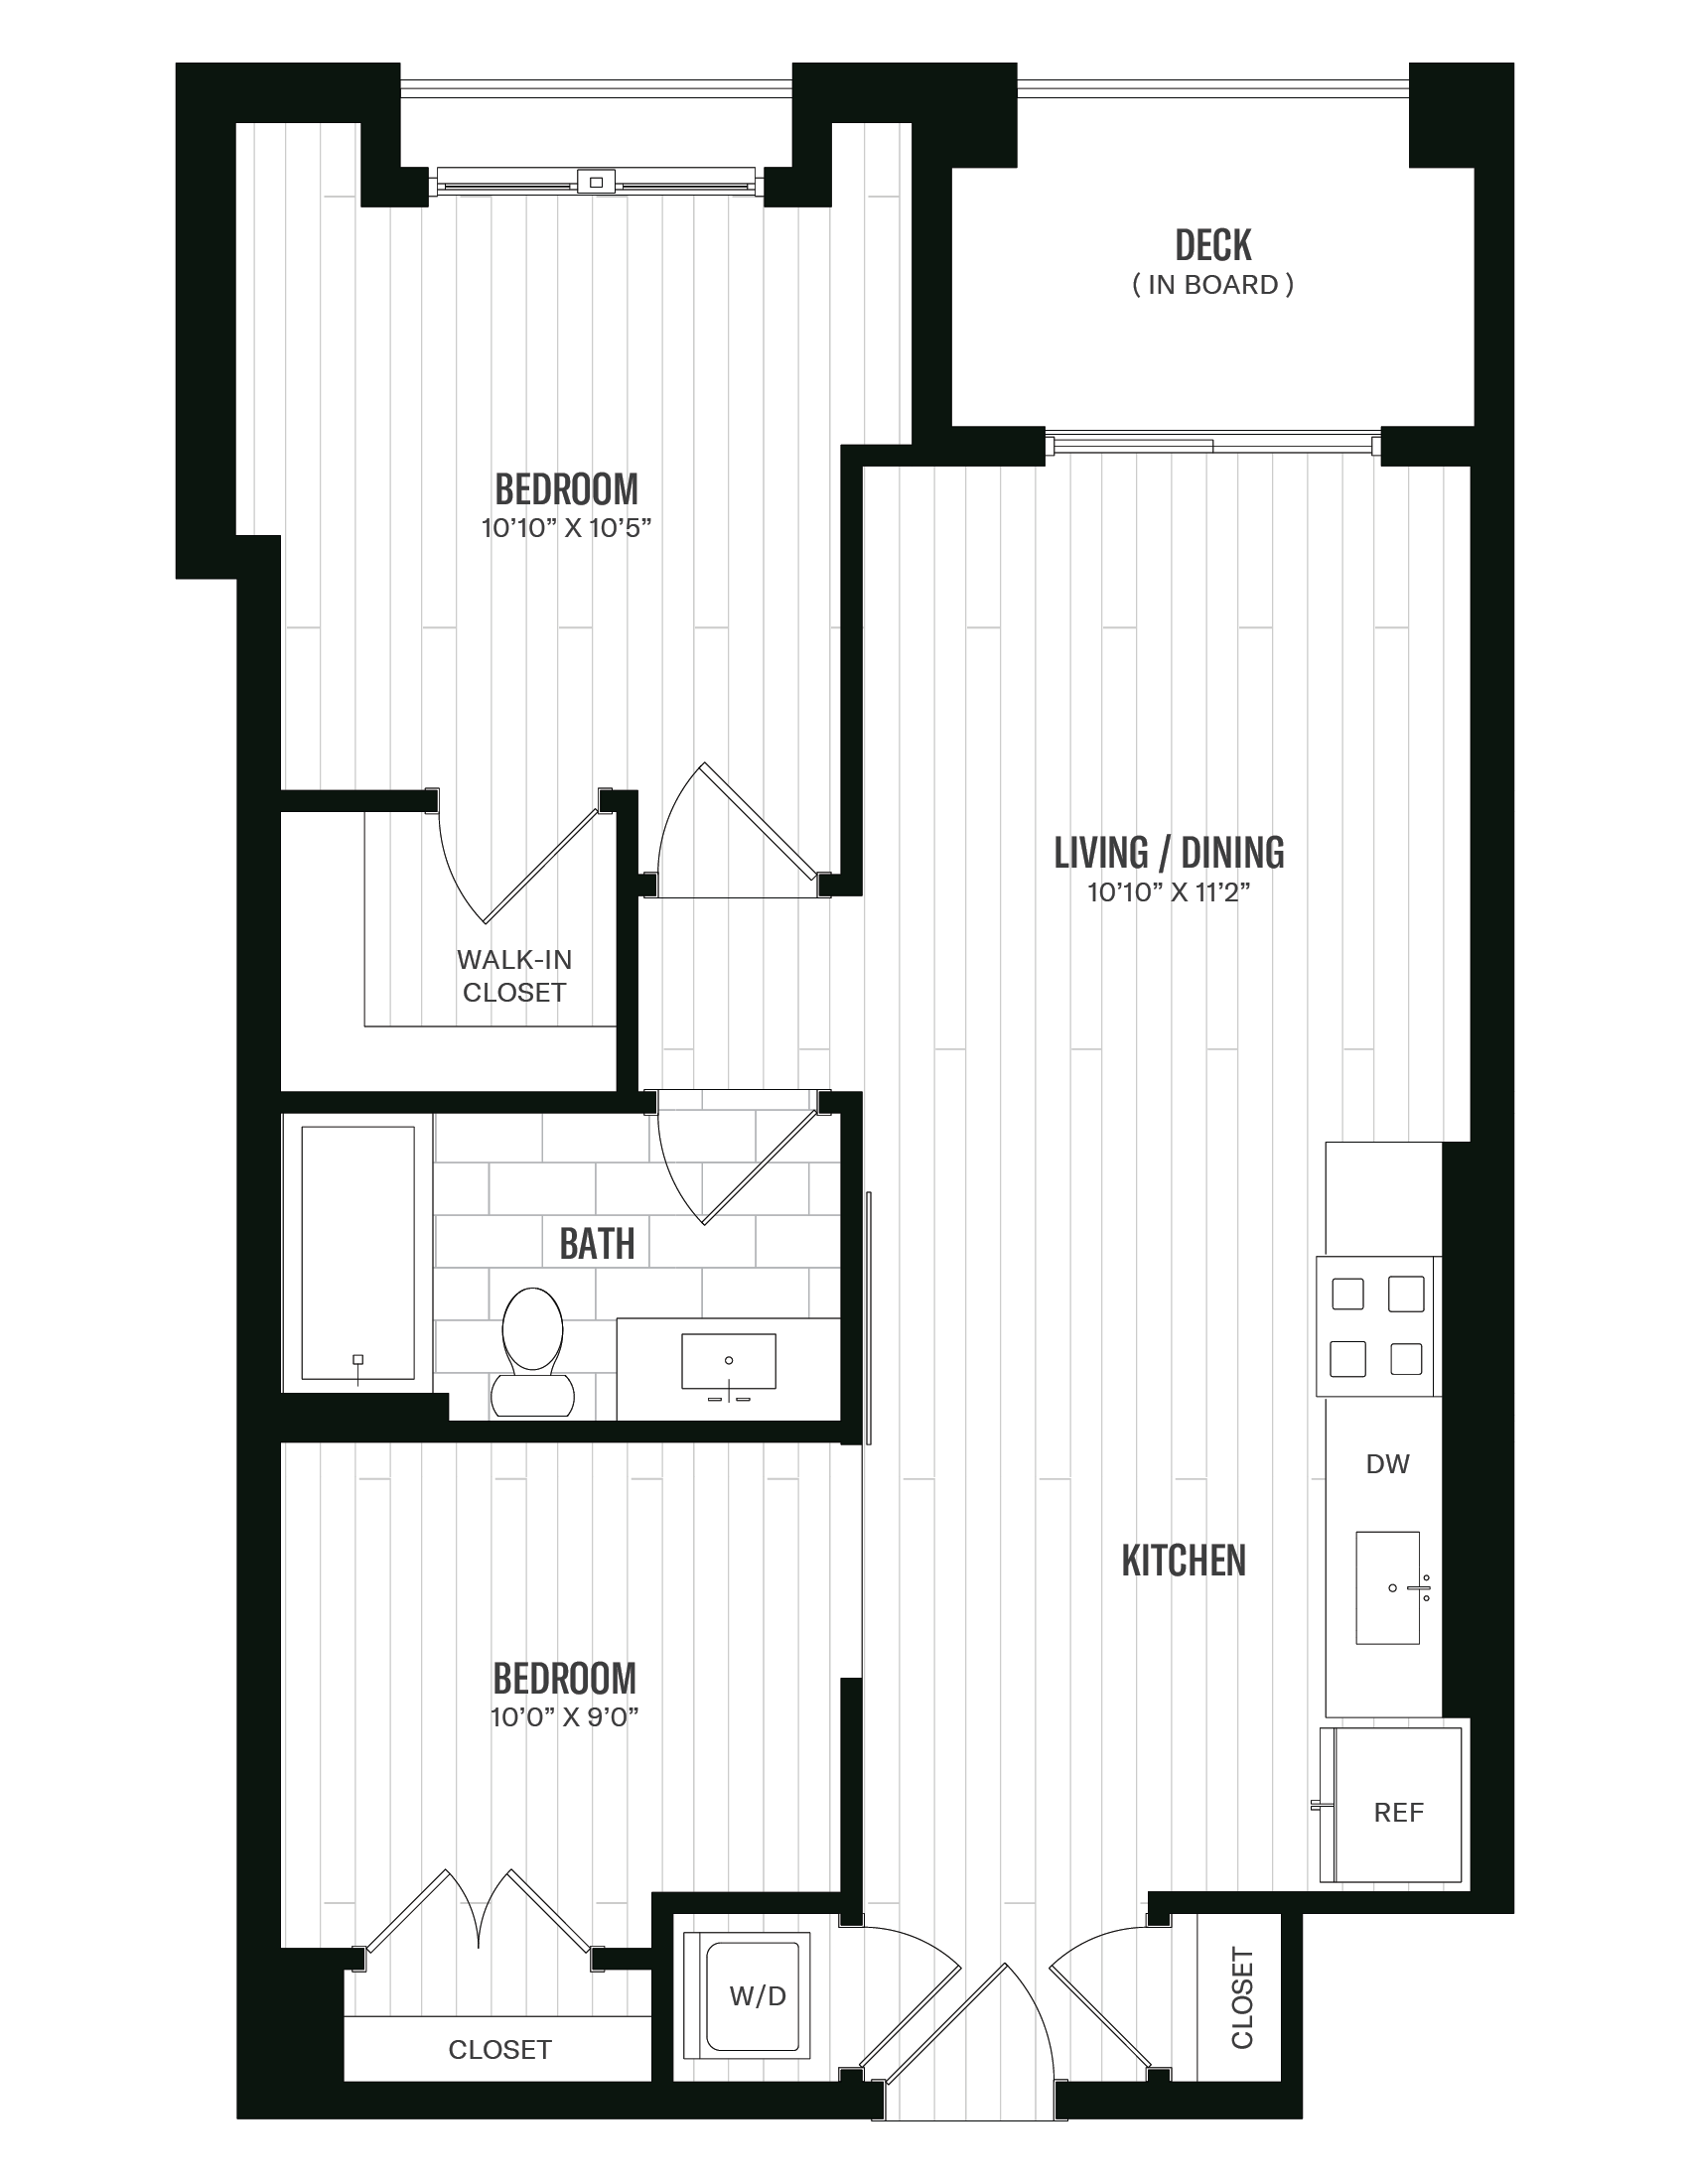 Floorplan image of unit 322